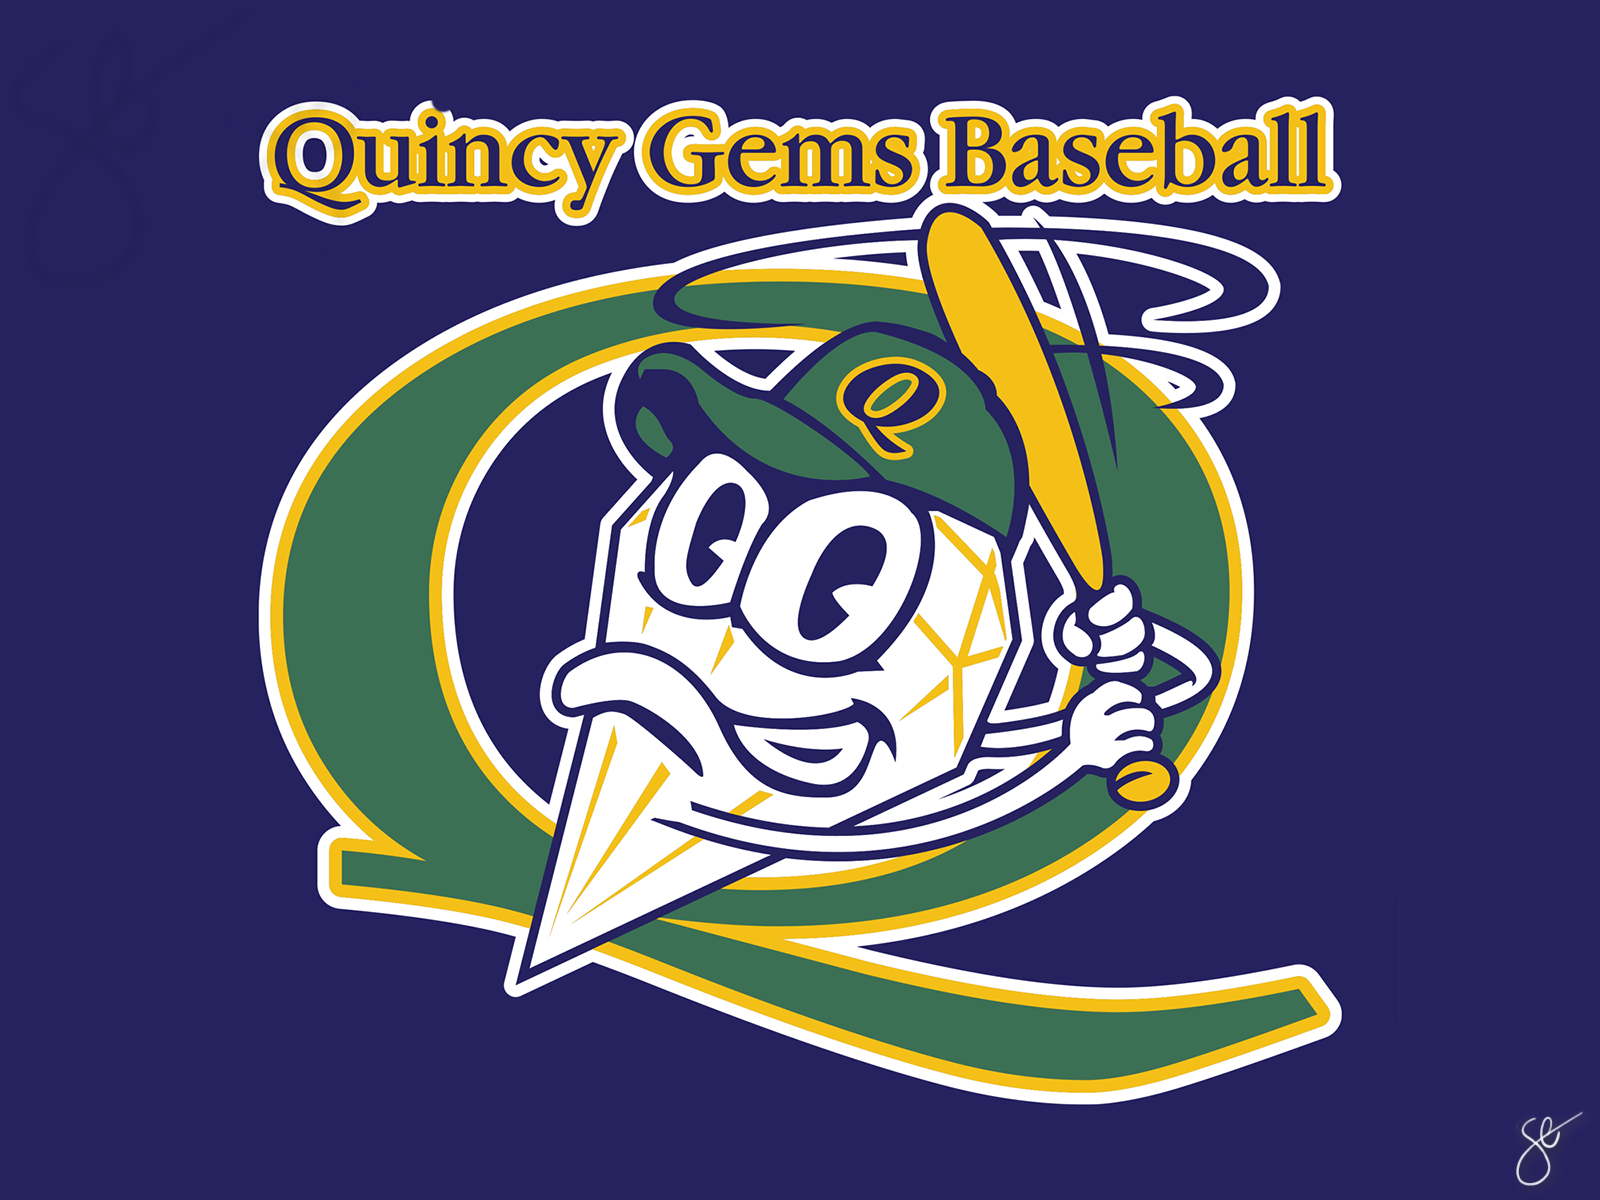 Quincy Gems Baseball by Steven Elmore on Dribbble